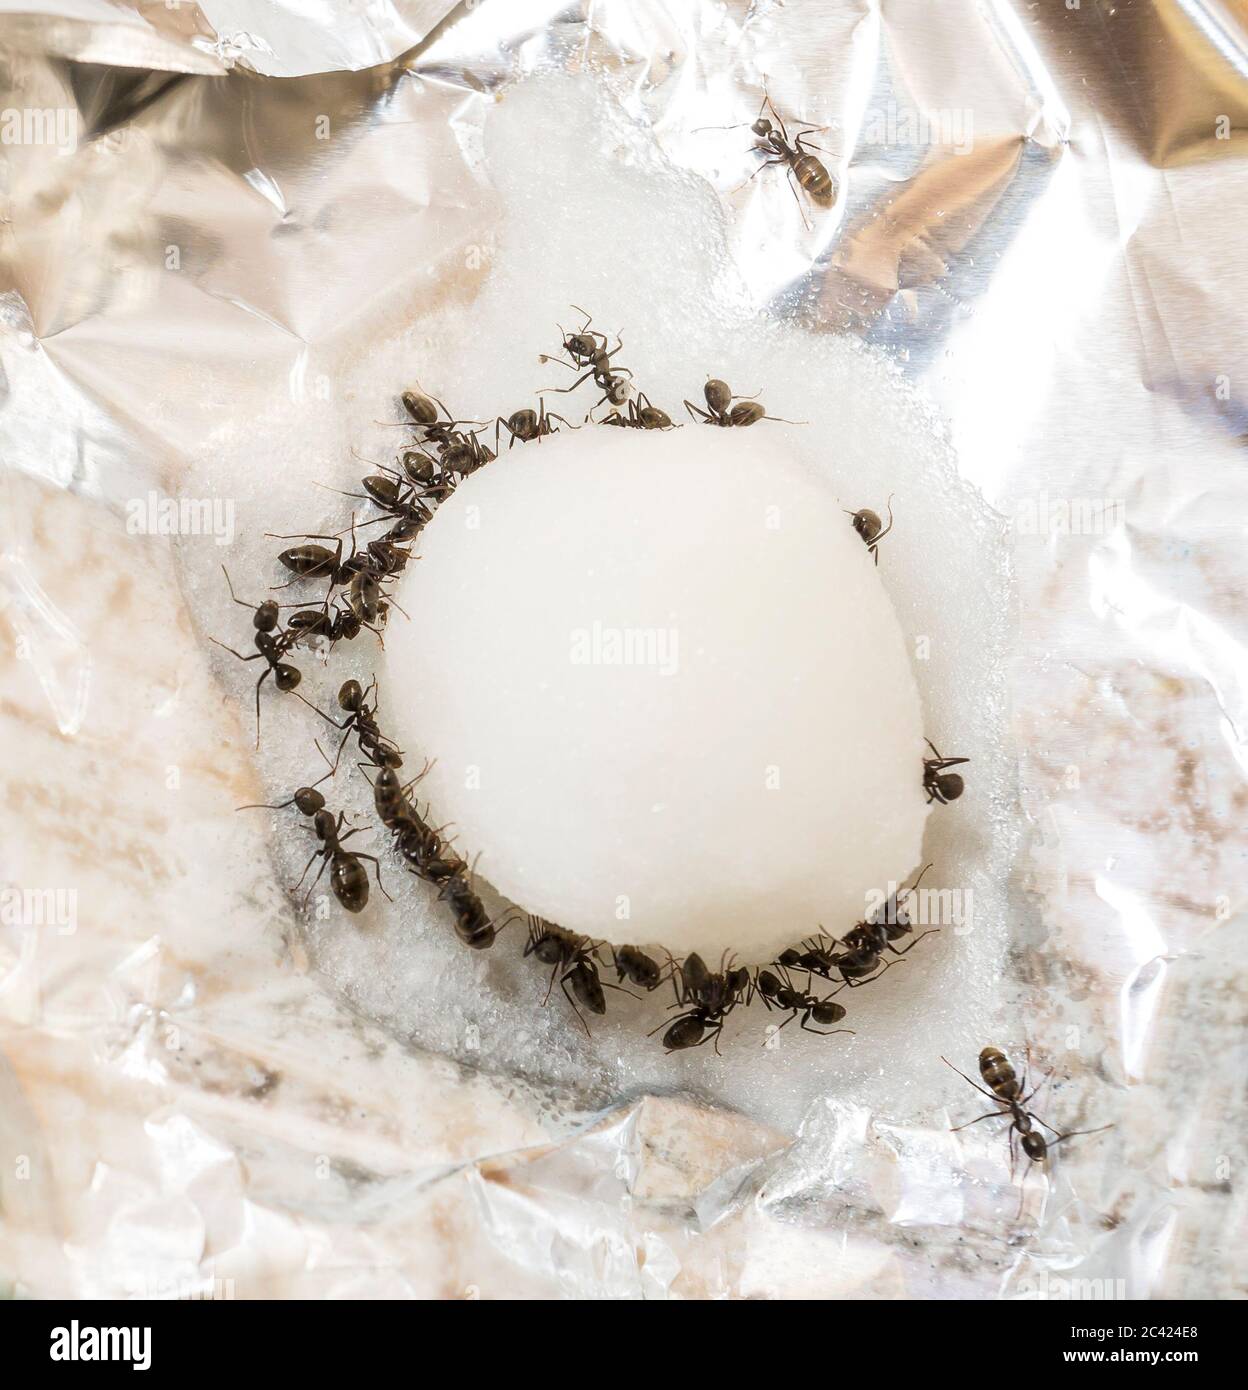 Contrôle de la peste qecrade, fourmis de menuisier noir se nourrissant sur une boule de coton avec une solution de sucre et de Borax également connu sous le nom de borate de sodium qui les tuera Banque D'Images